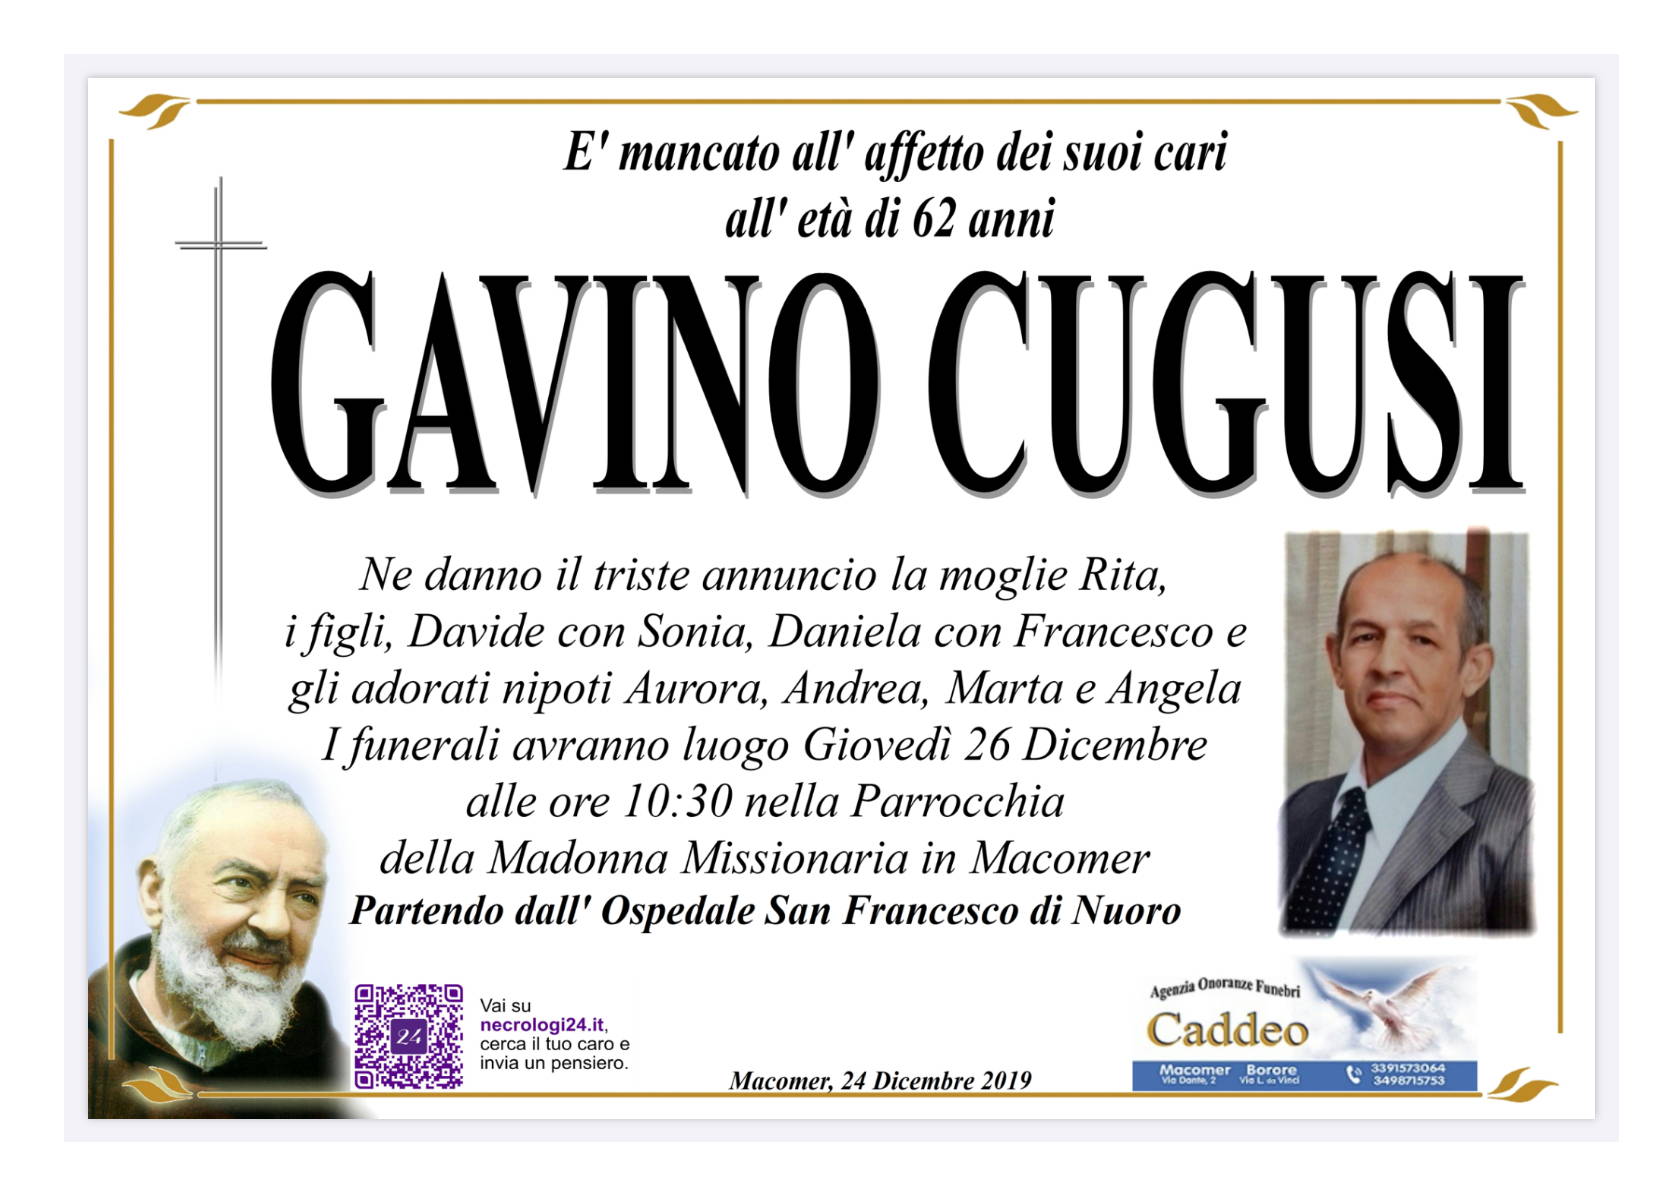 Gavino Cugusi